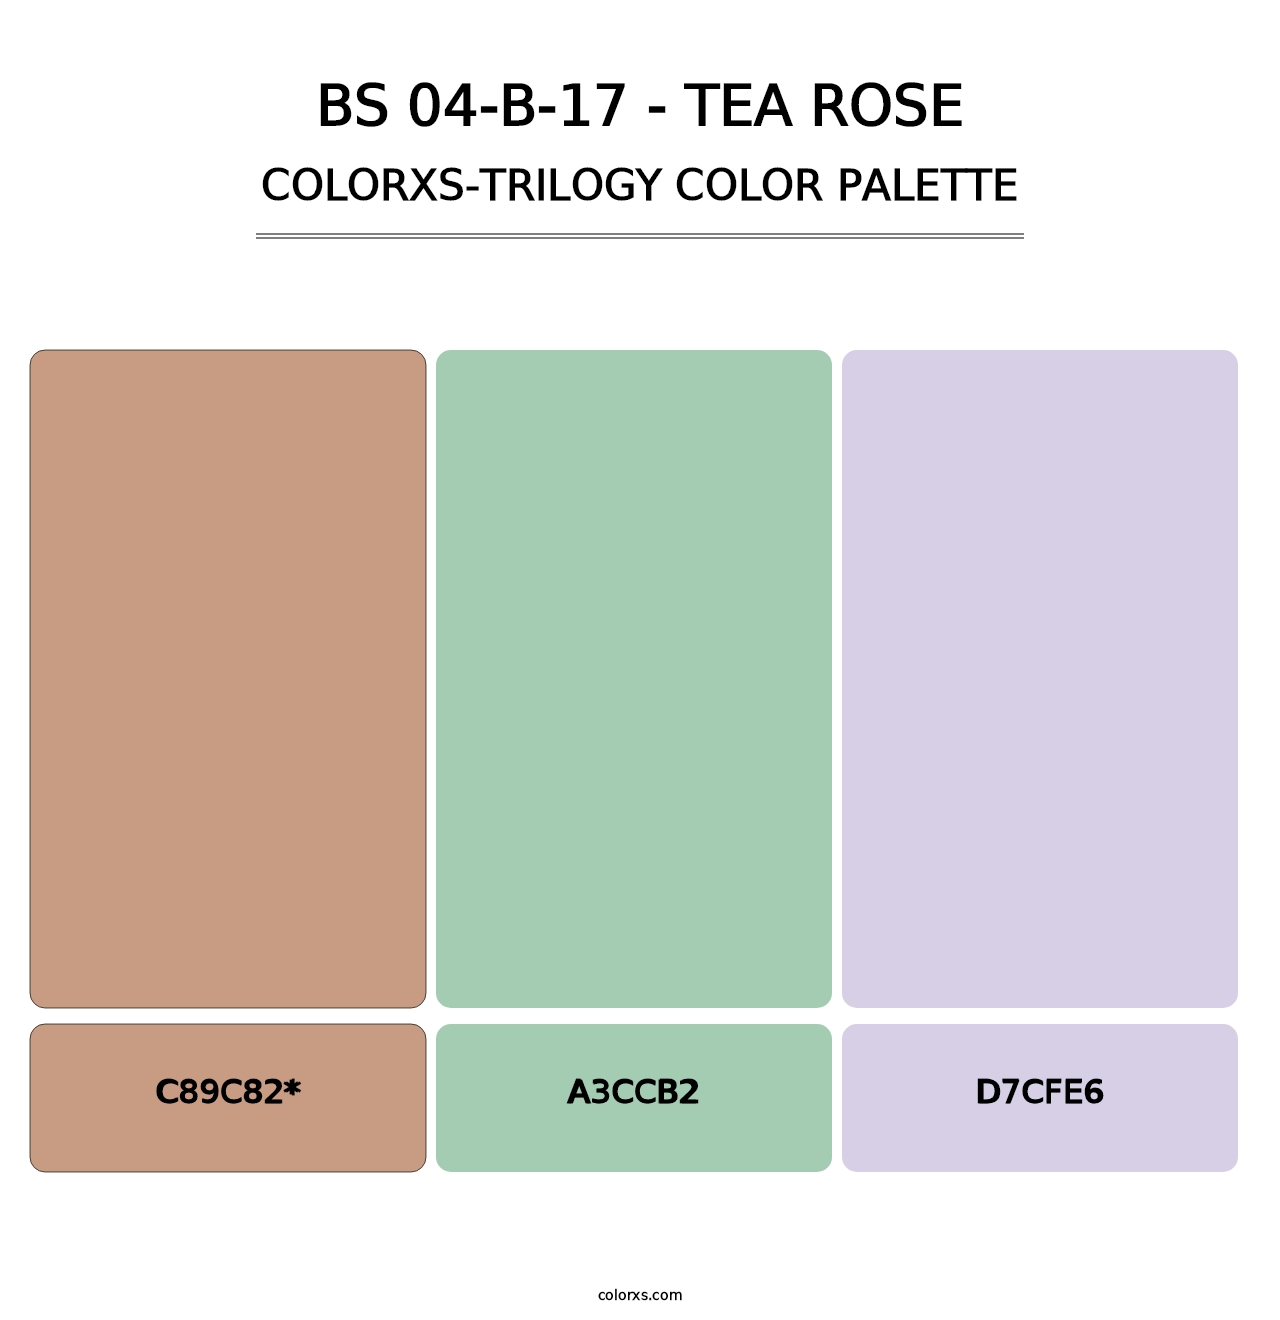 BS 04-B-17 - Tea Rose - Colorxs Trilogy Palette